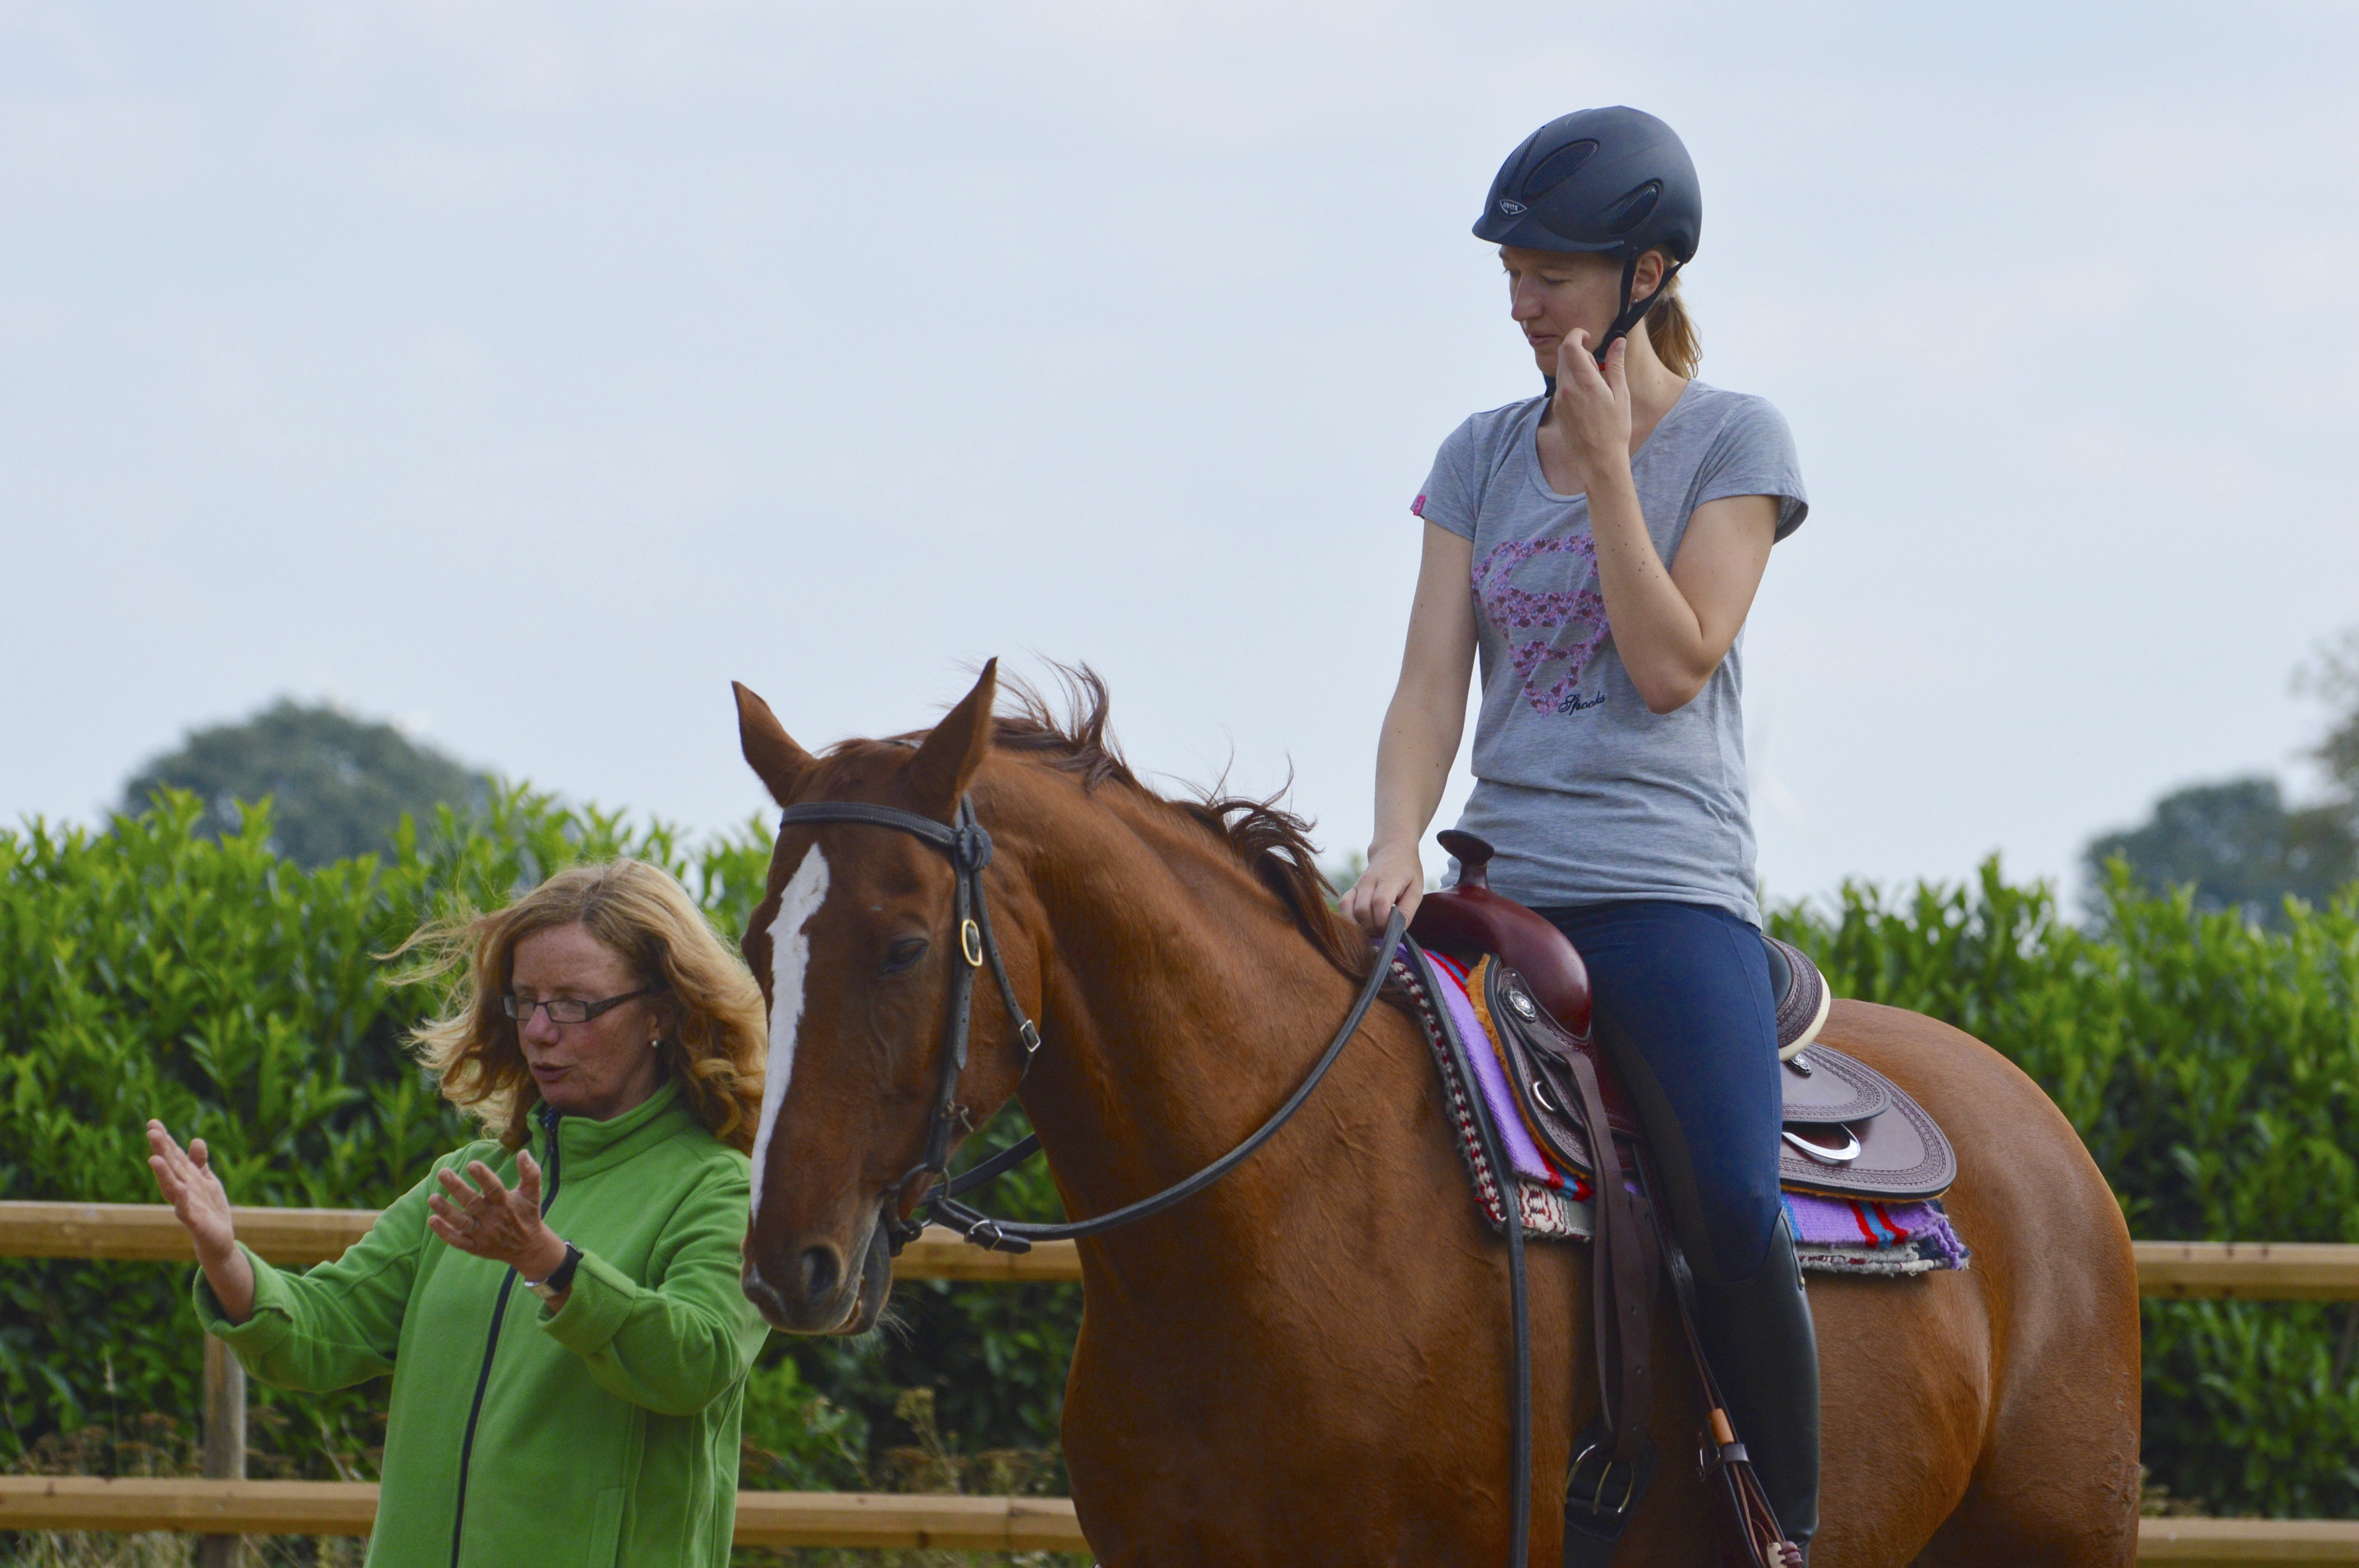 Frau Schöneich erklärt einer jungen Reiterin, die im Westernsattel auf einem Pferd sitzt eine Übung.